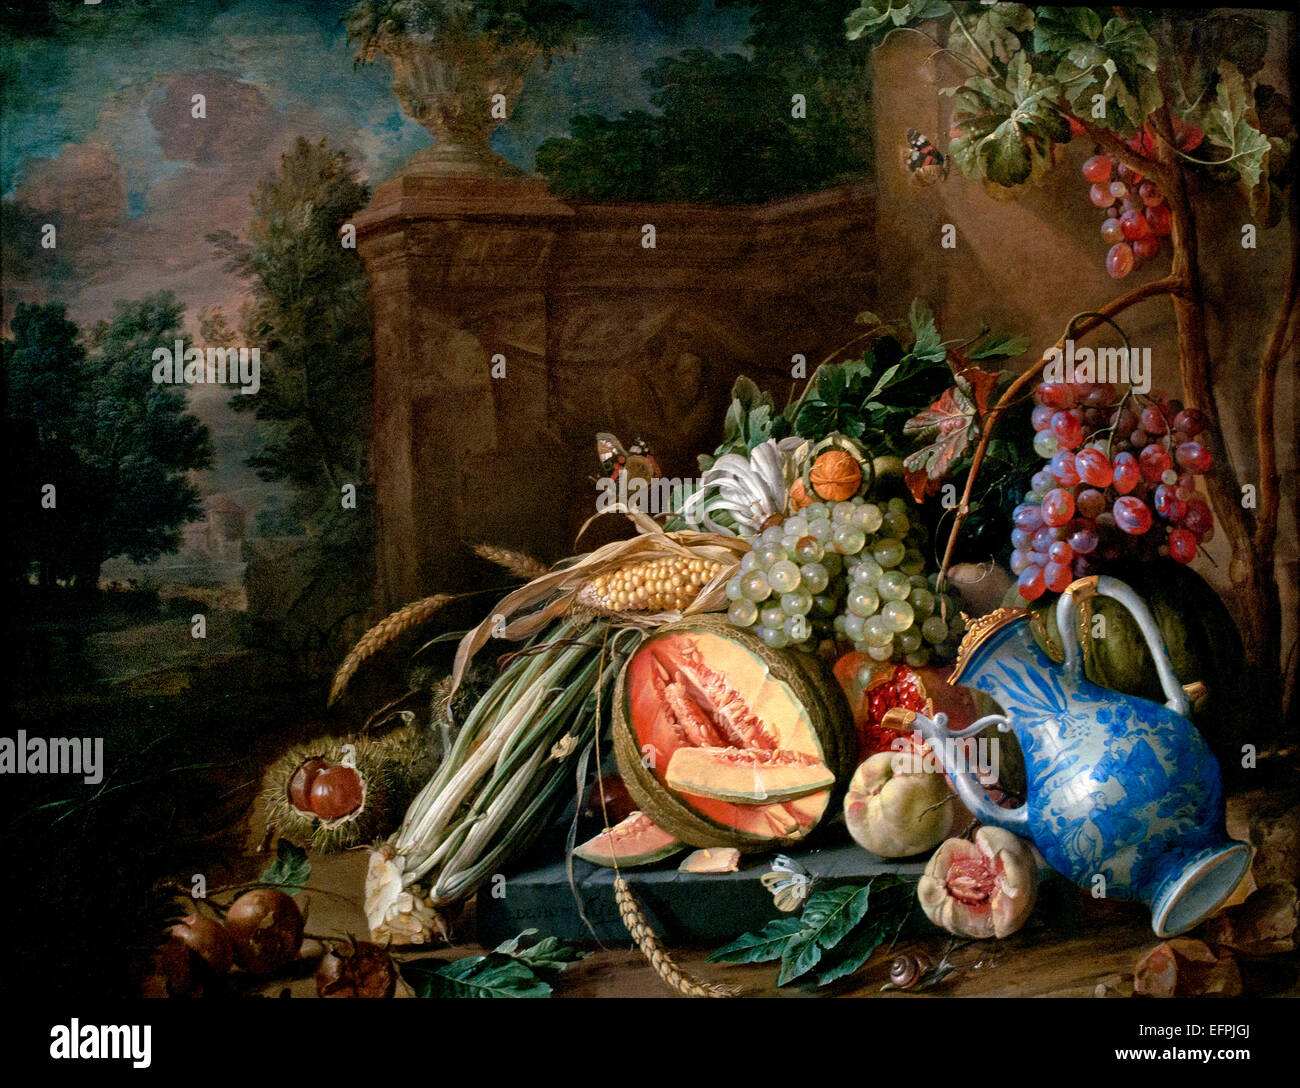 Nature morte avec fruits et légumes avant d'une balustrade Jardin 1658 Jan Davidsz. De Heem 1606 - 1684 Pays-Bas Néerlandais Banque D'Images